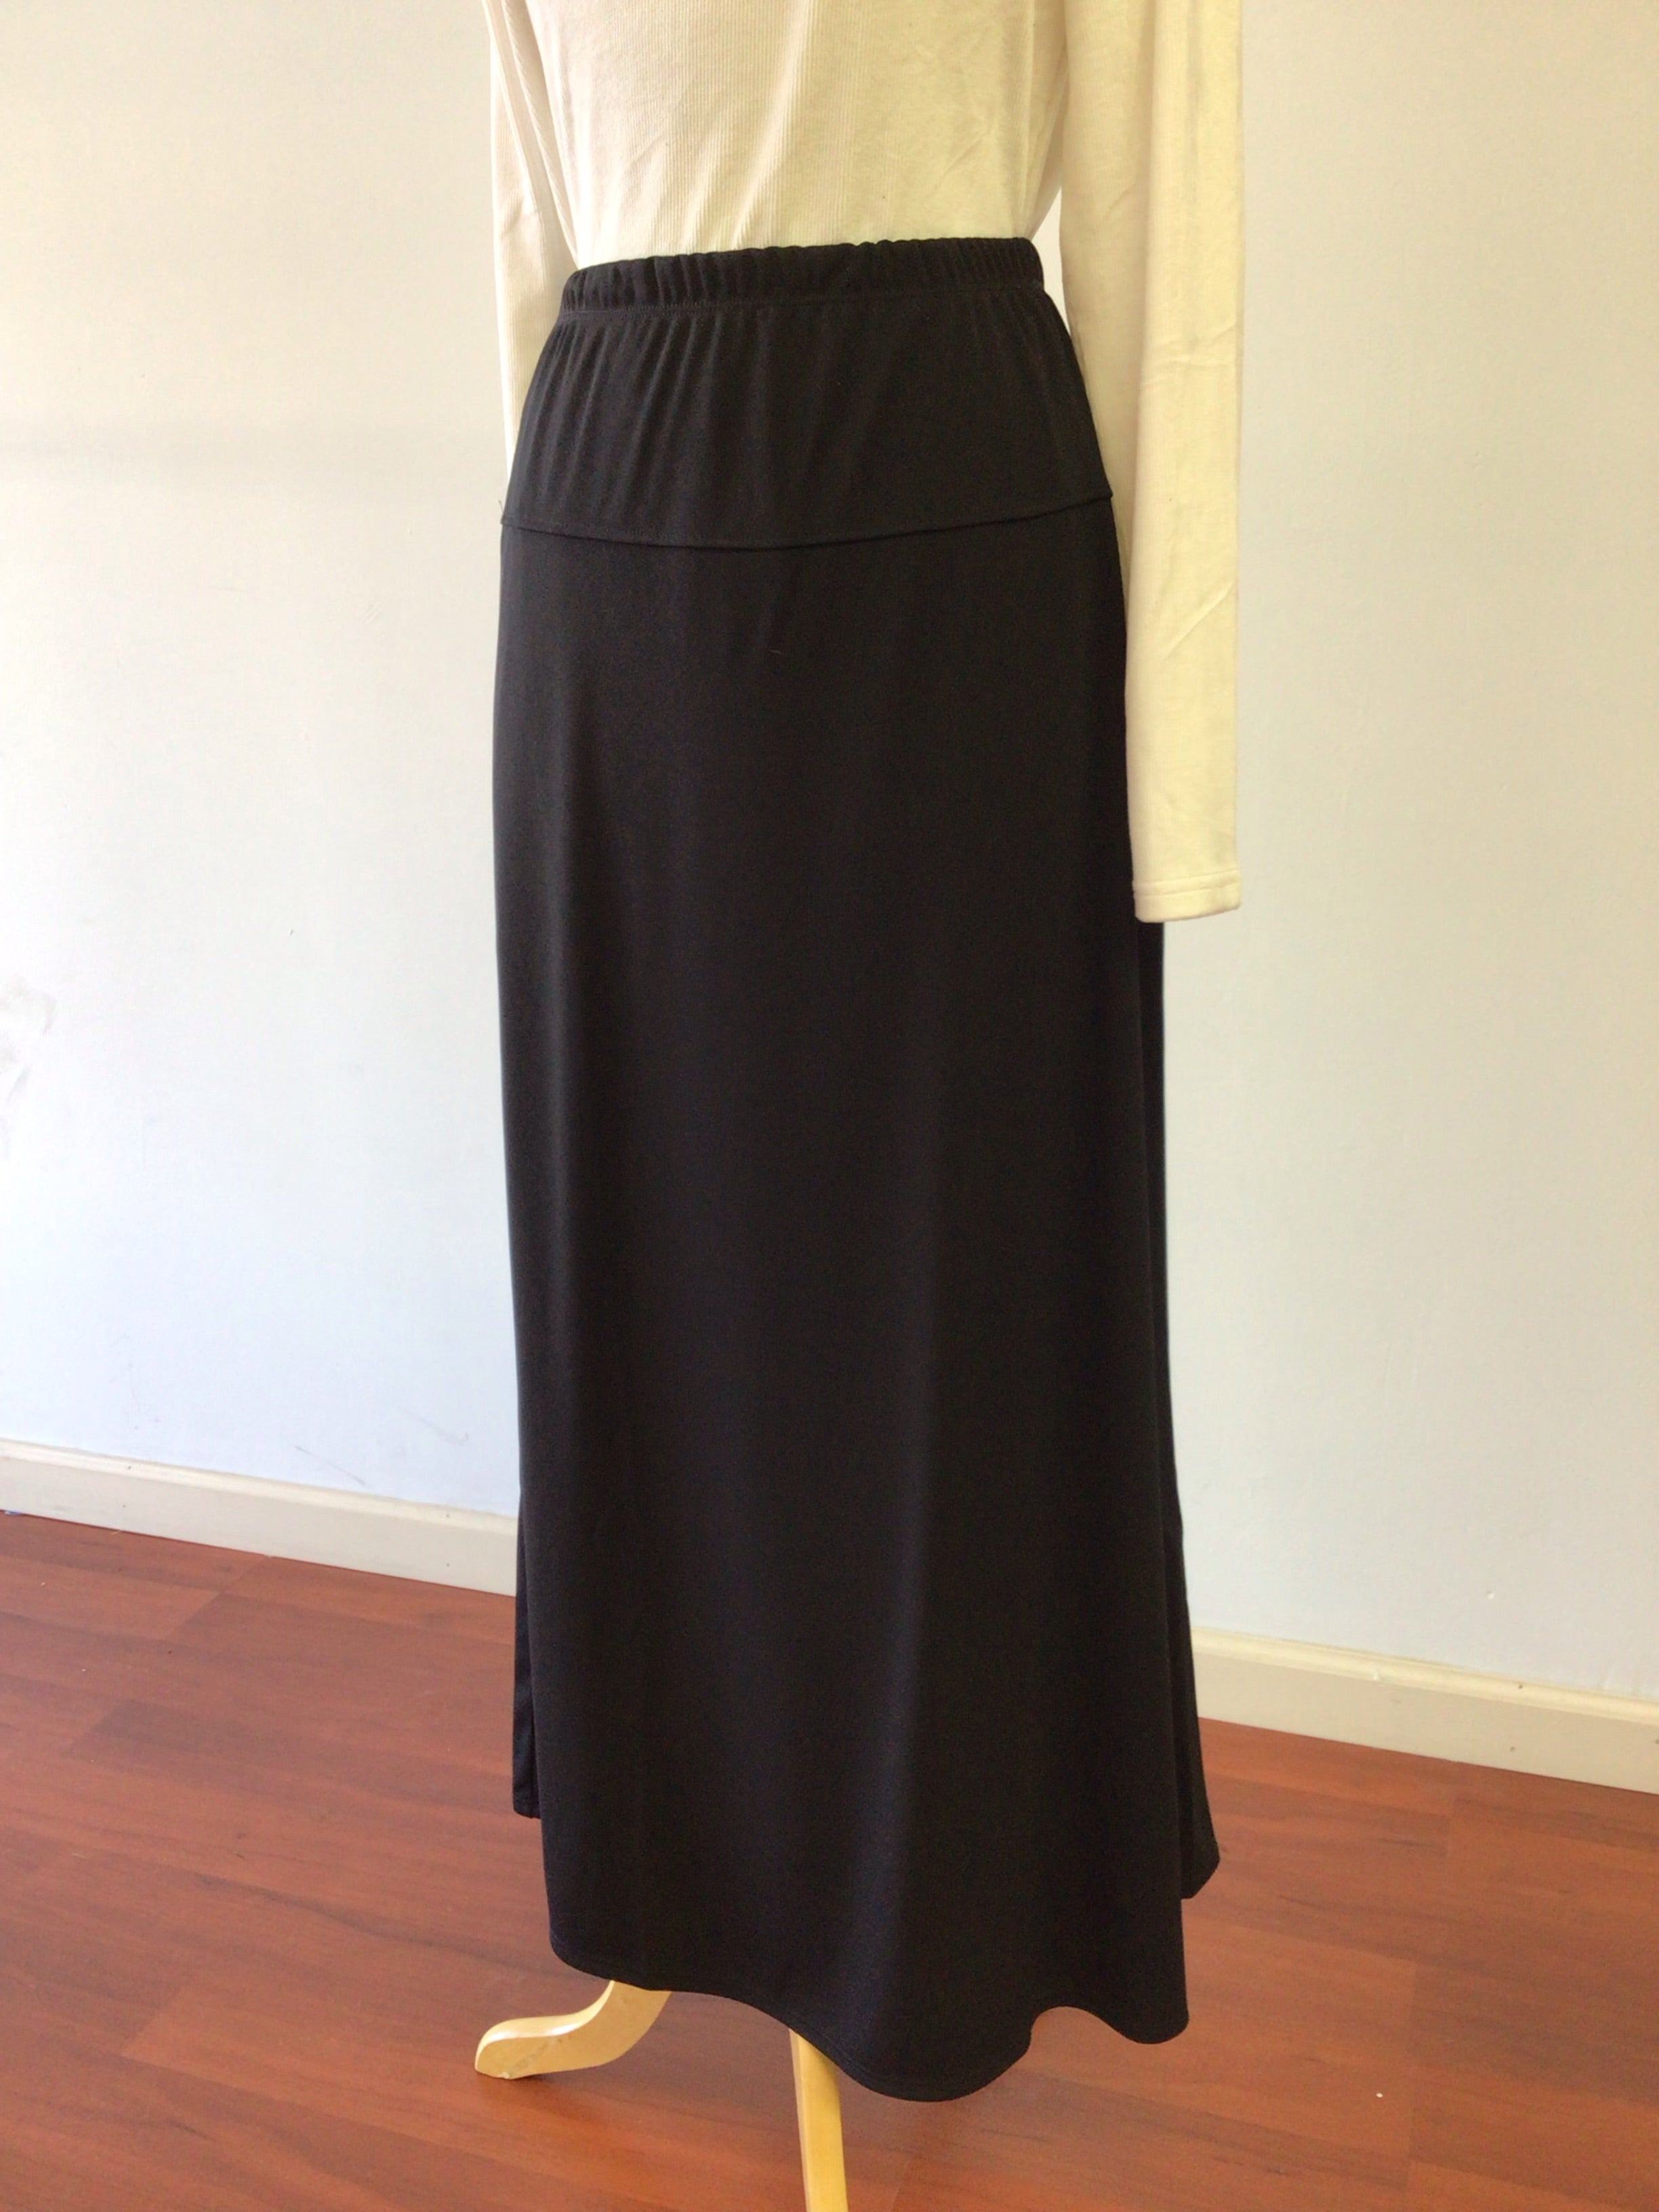 Long black skirt 514-40